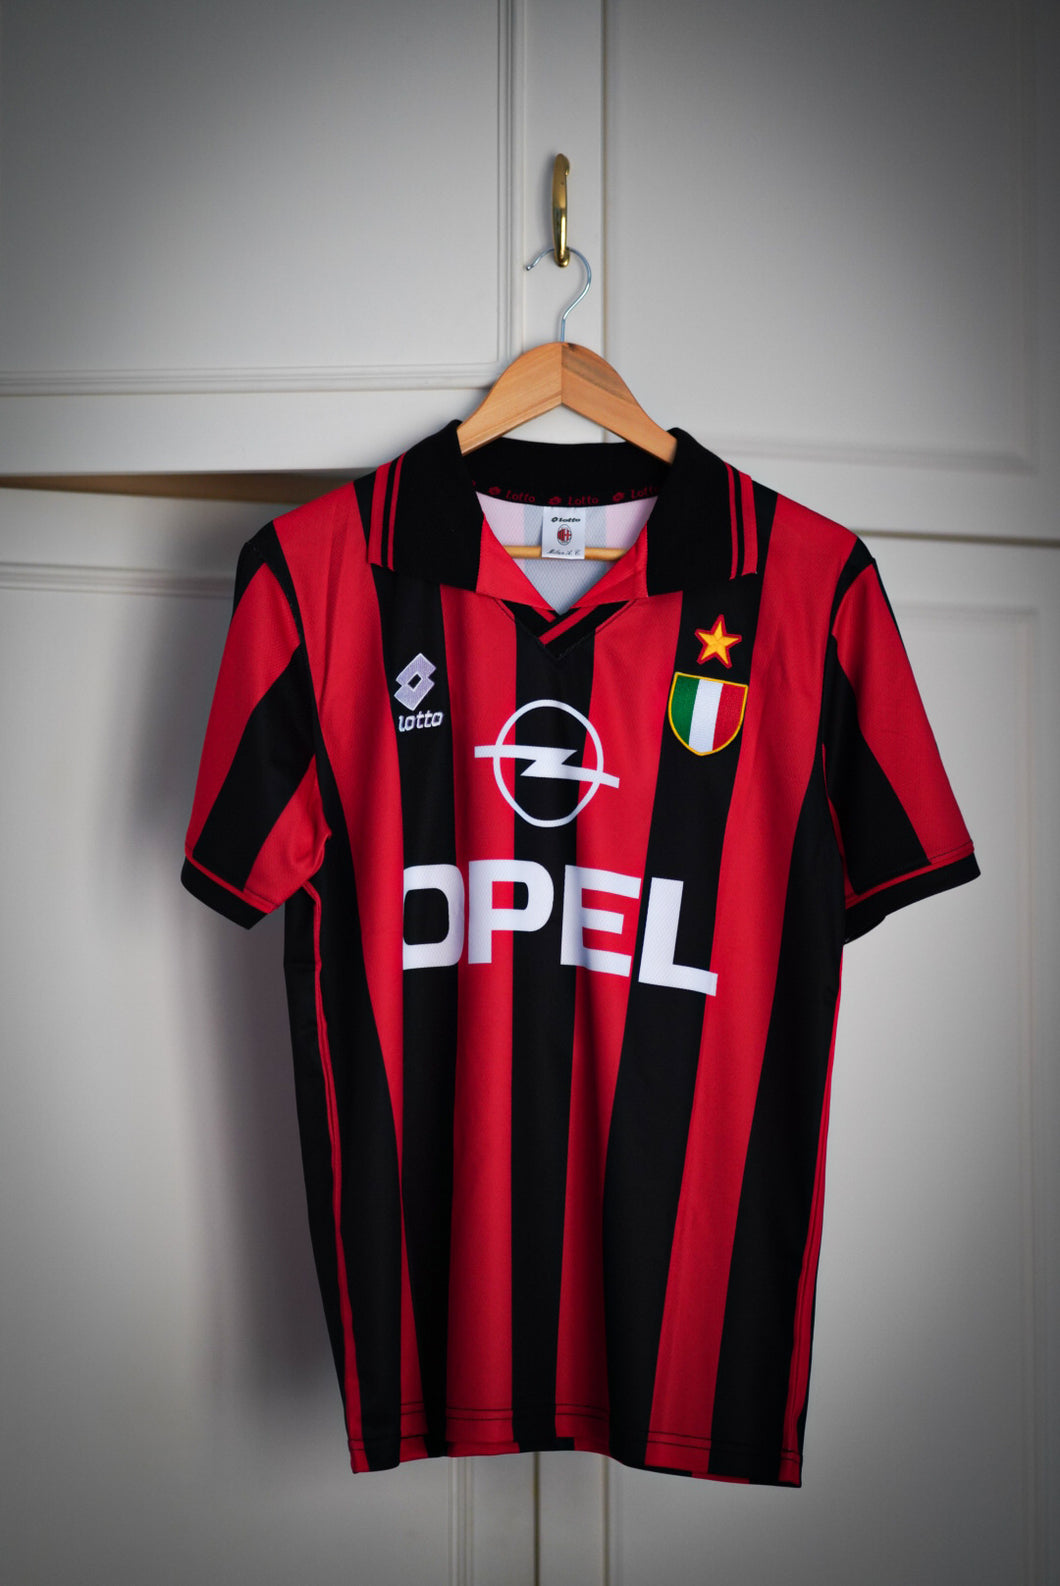 George Weah, AC Milan 96/97